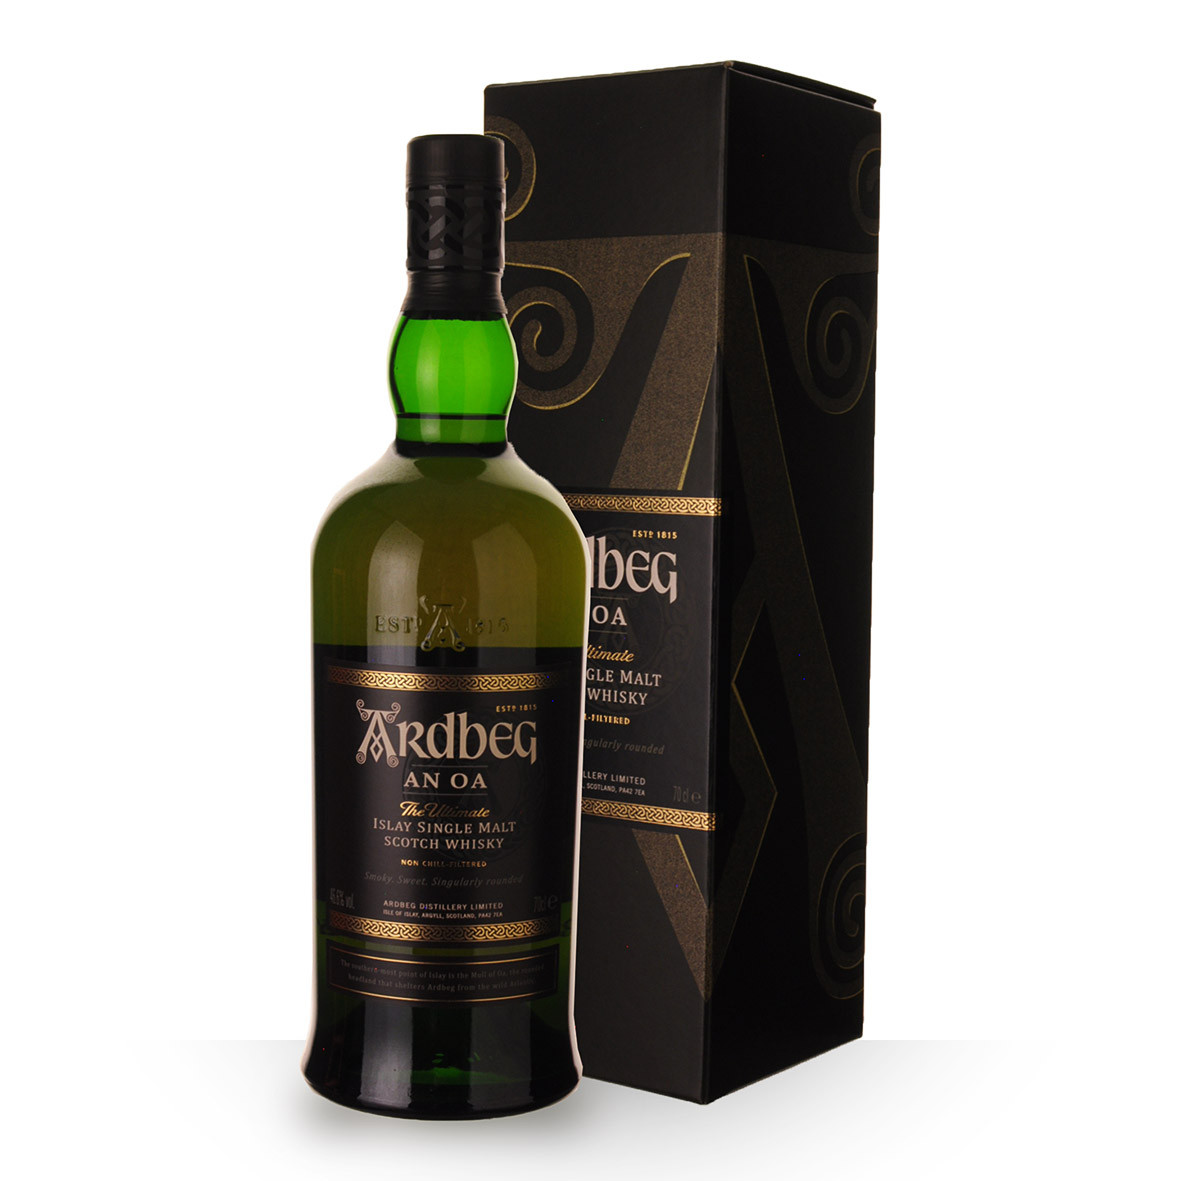 Achat de Whisky Ardbeg AN OA 70cl vendu en Etui sur notre site